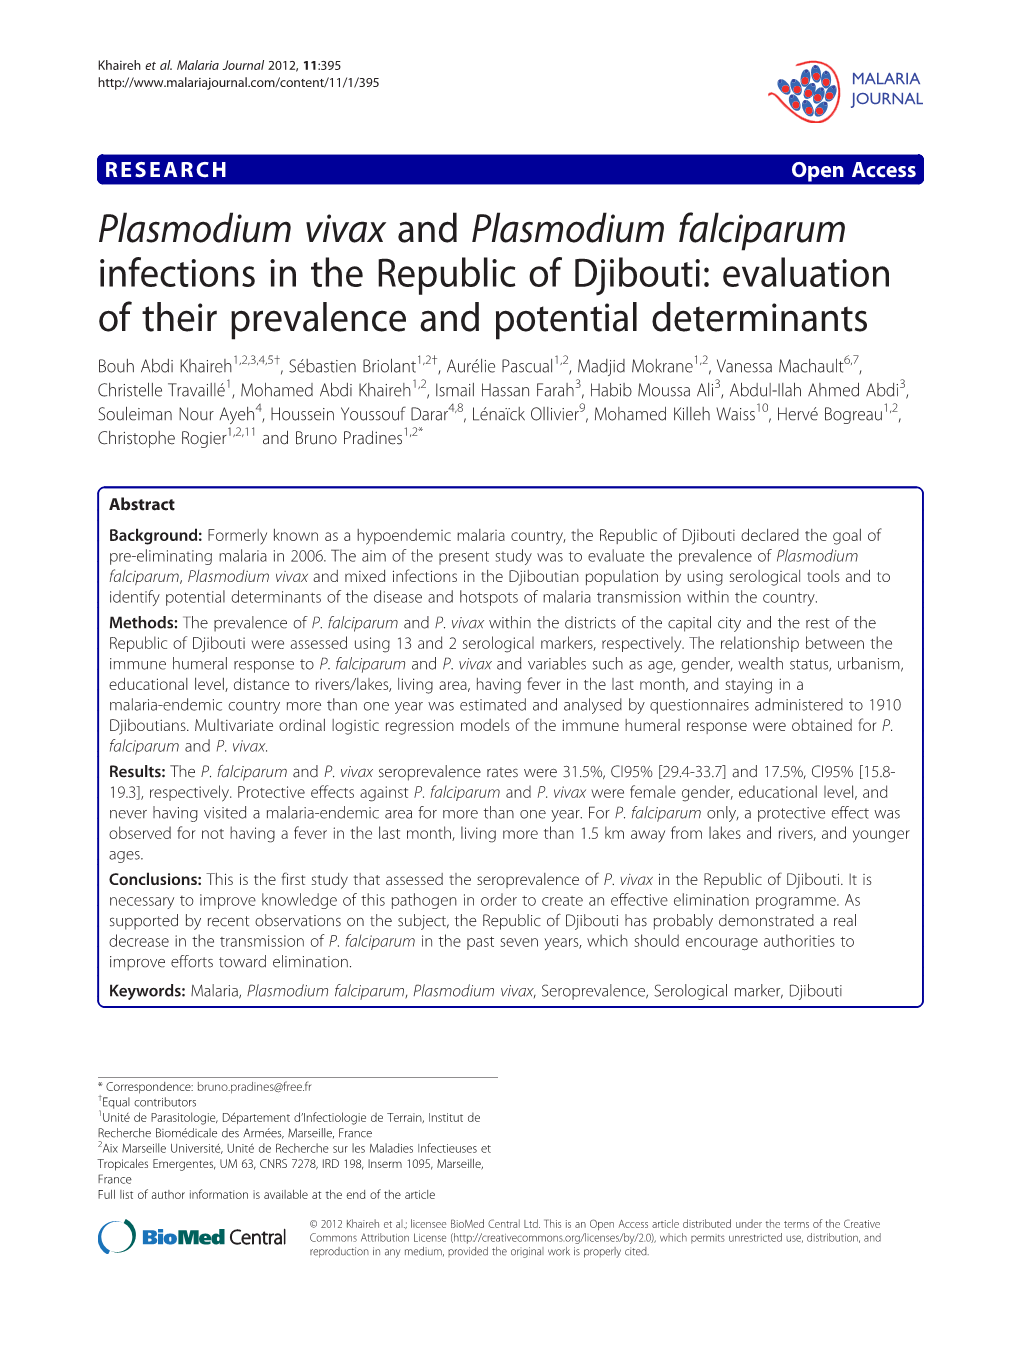 Plasmodium Vivax and Plasmodium Falciparum Infections in The